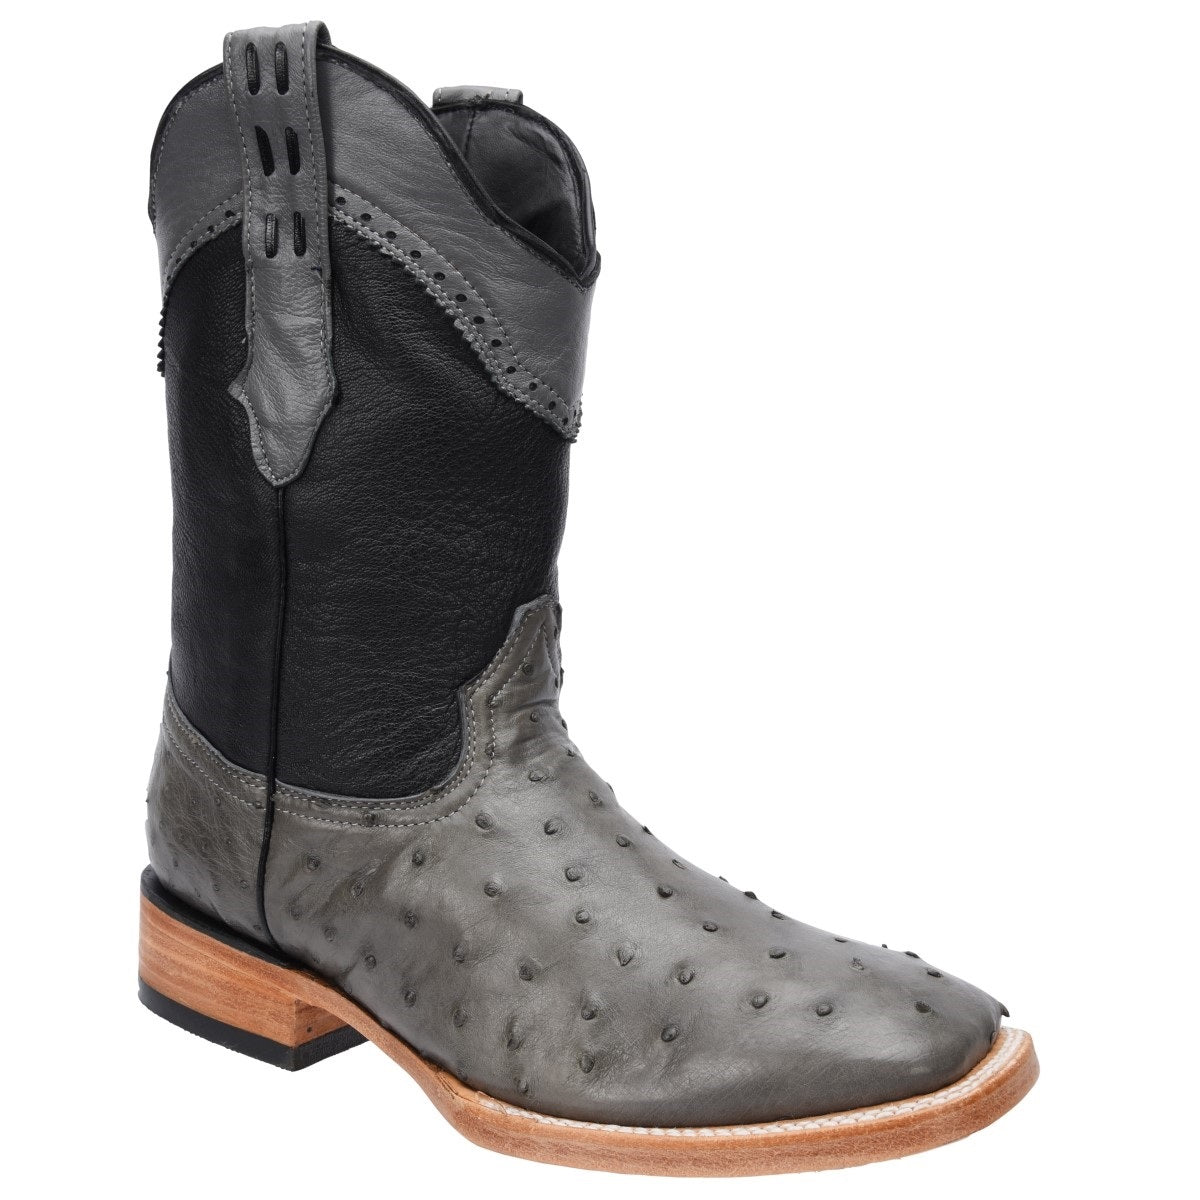 Botas Vaqueras TM-WD0293 - Western Boots